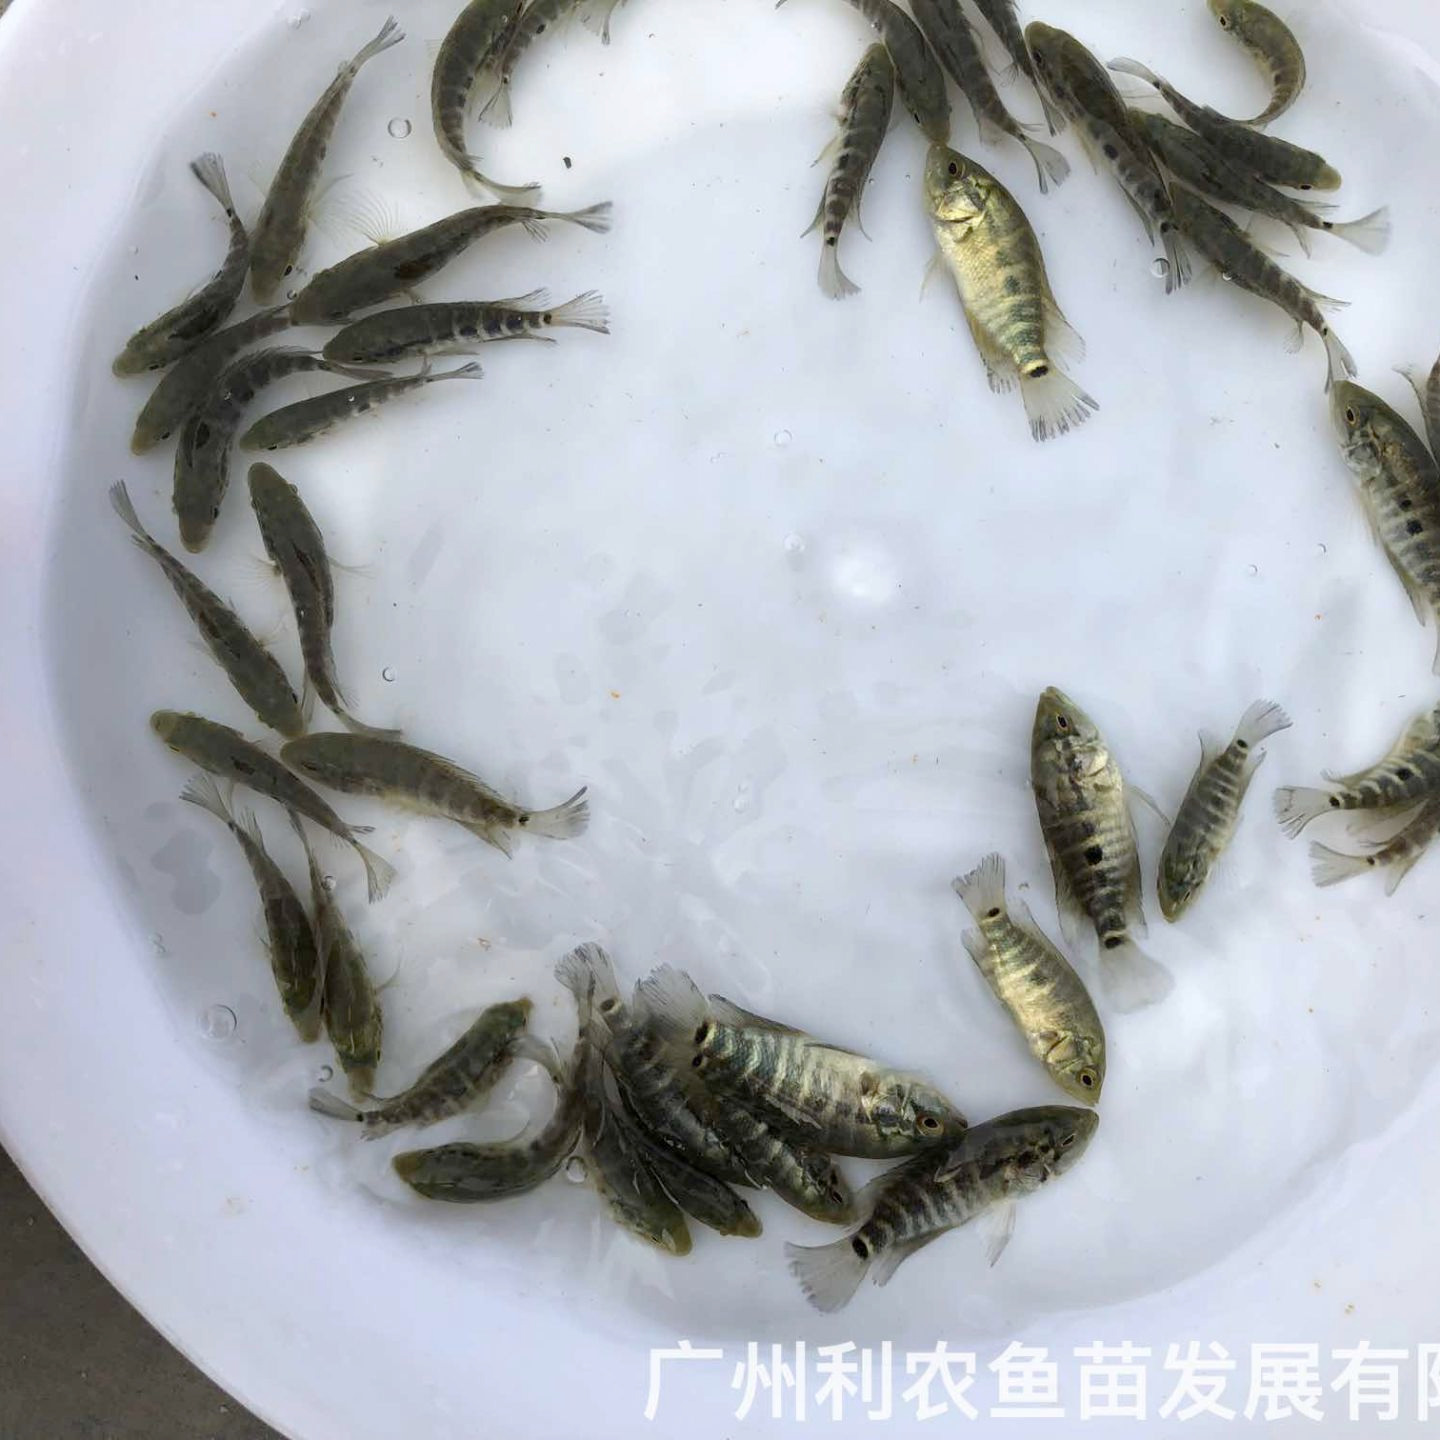 广东阳江淡水花斑鱼苗出售广东佛山石斑鱼苗批发价格